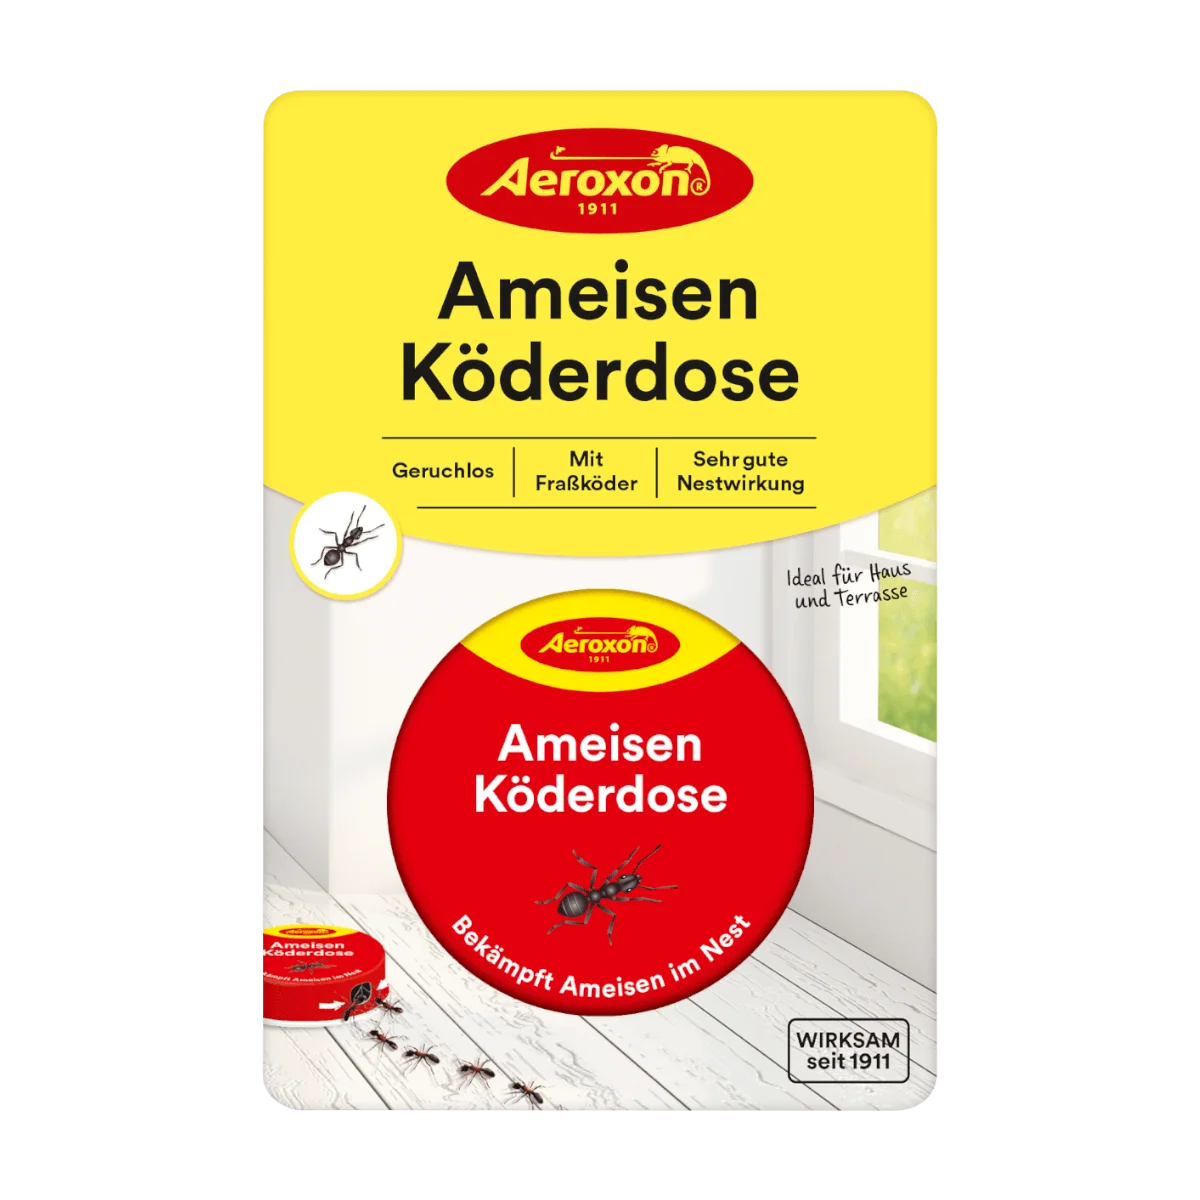 Aeroxon Ameisen-Köderdosen, 1 Stk